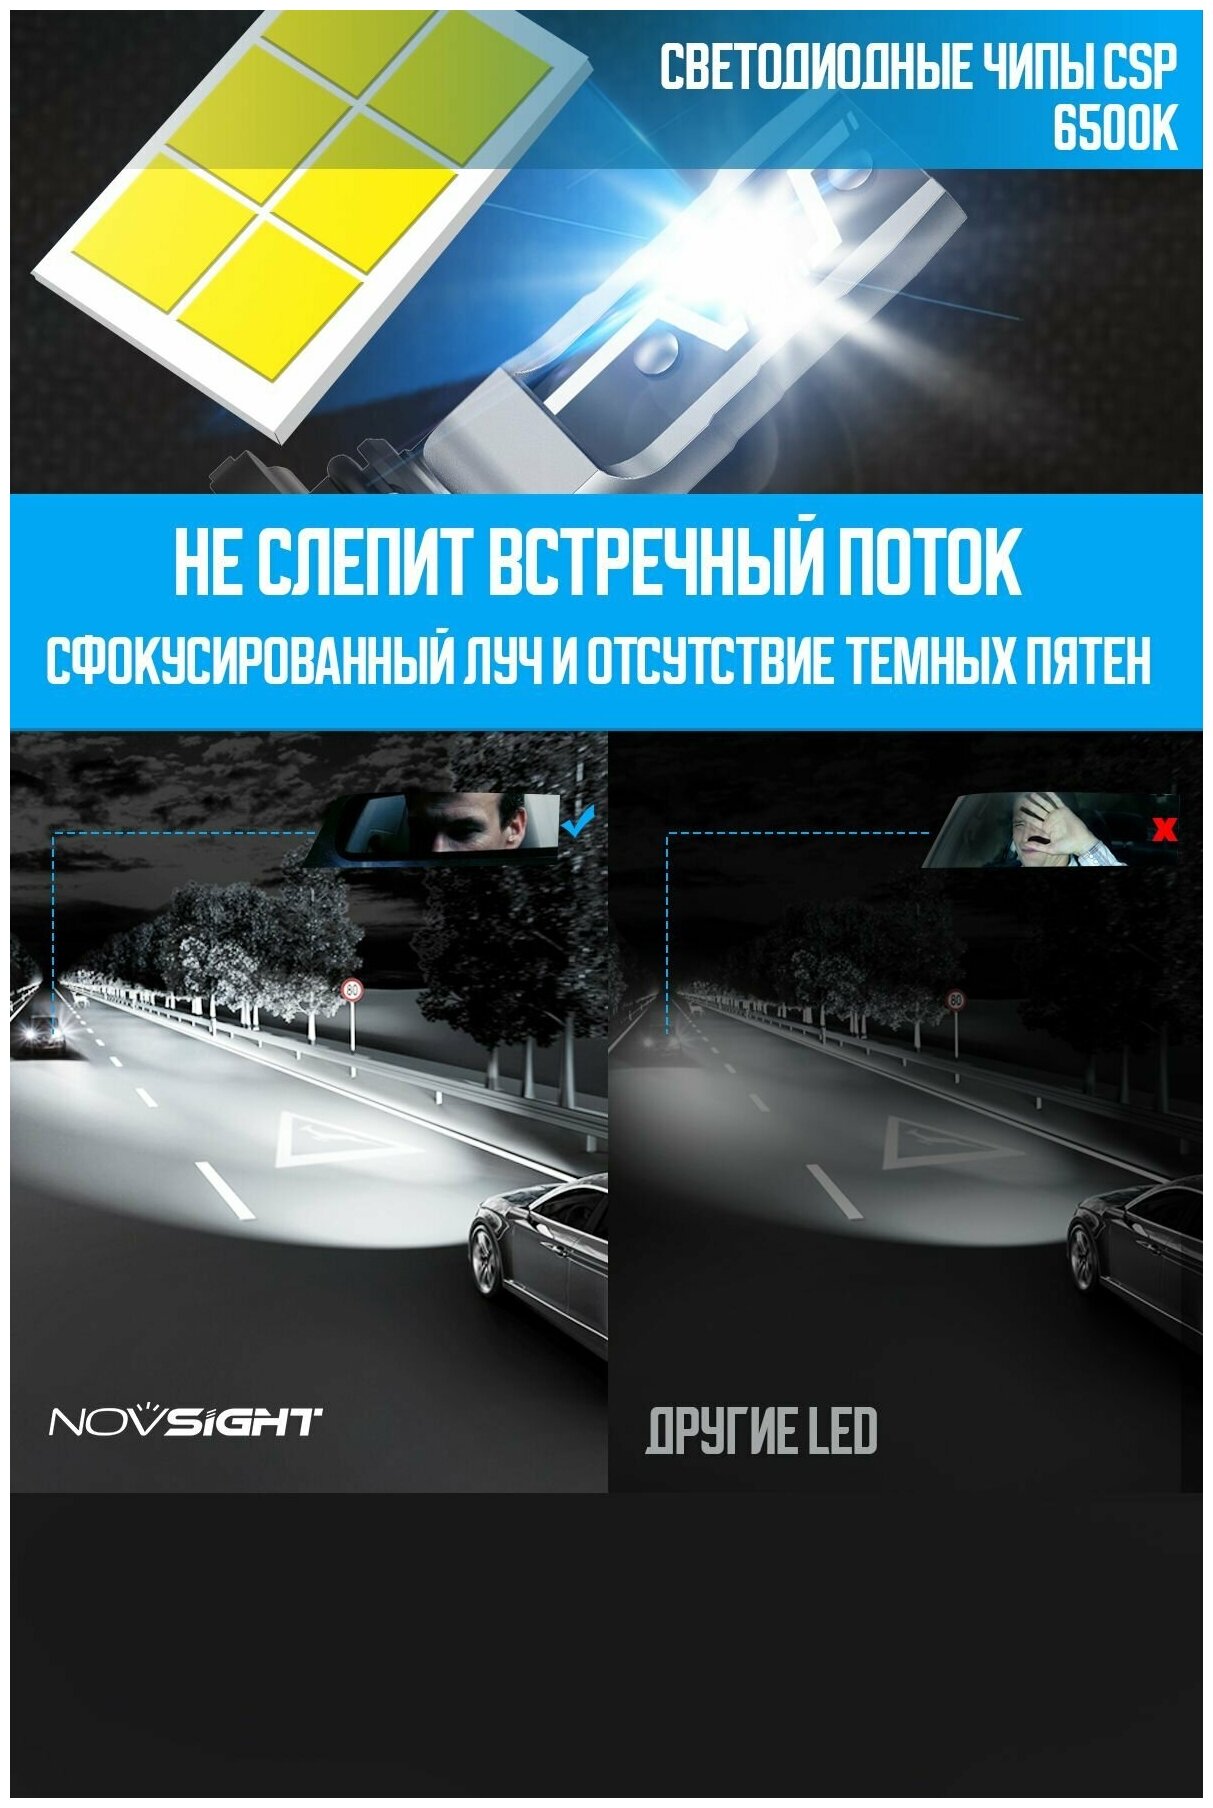 Светодиодная лампа Novsight N57 H1 цоколь P14,5s 40Вт 2шт мини размер 6500К 10000Лм белый свет LED автомобильная